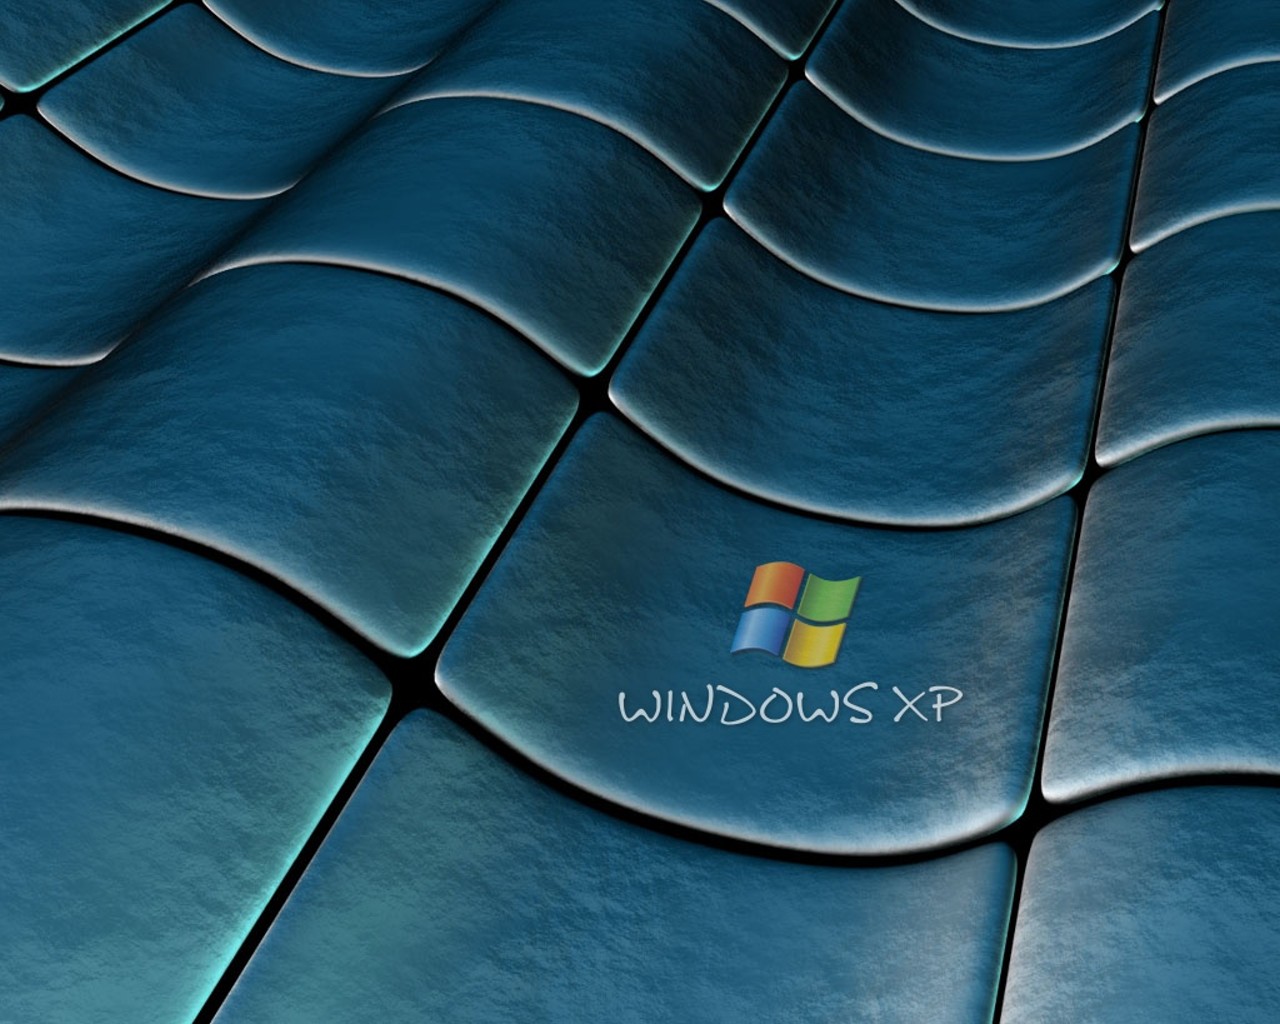 Windows xp обои в реальности